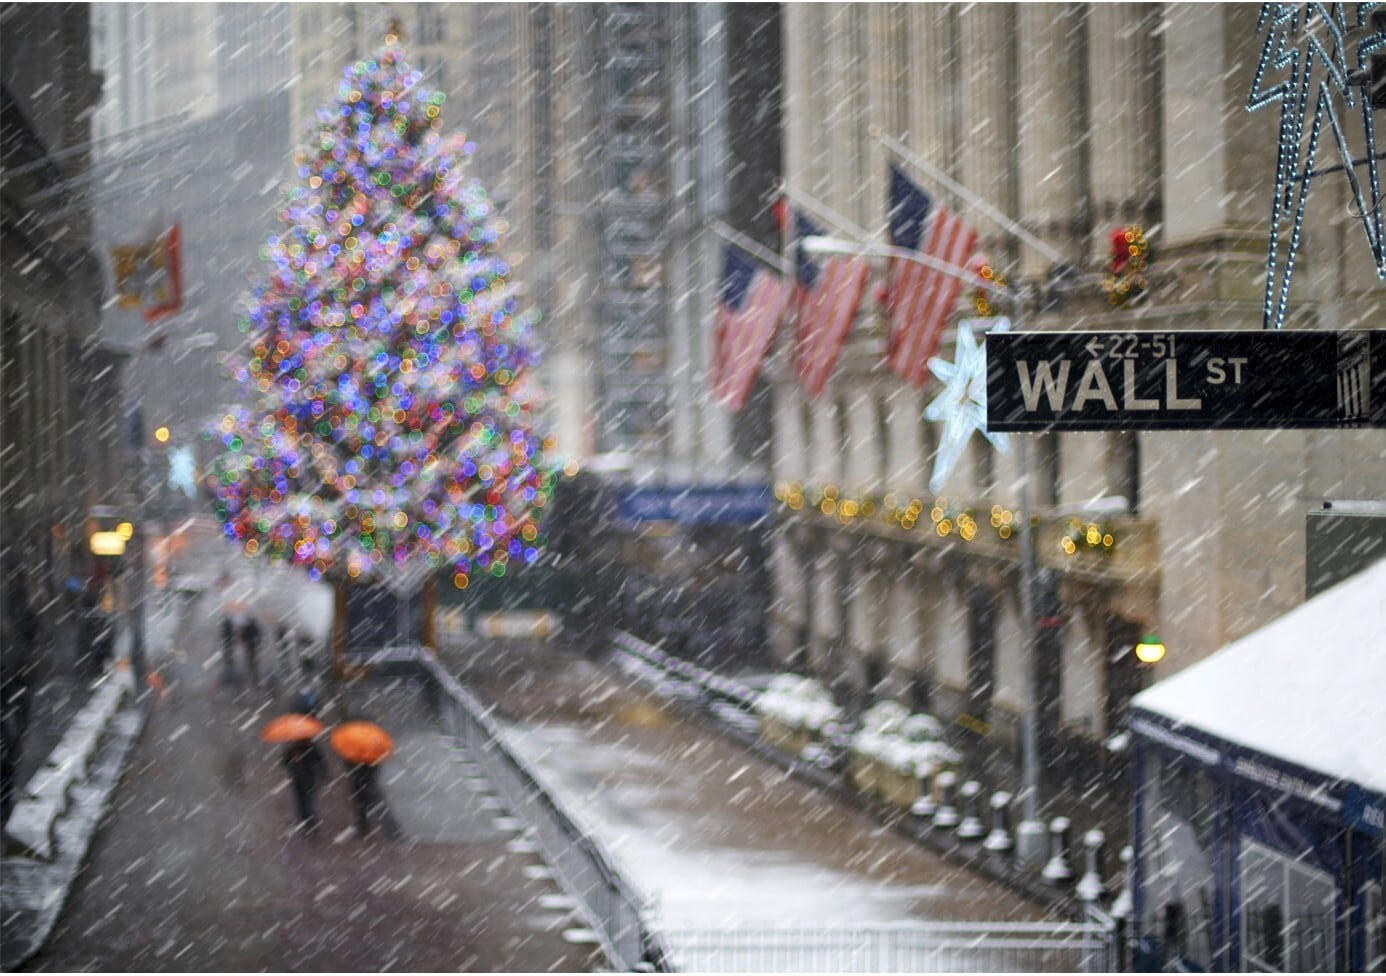 Wall Street at Christmas